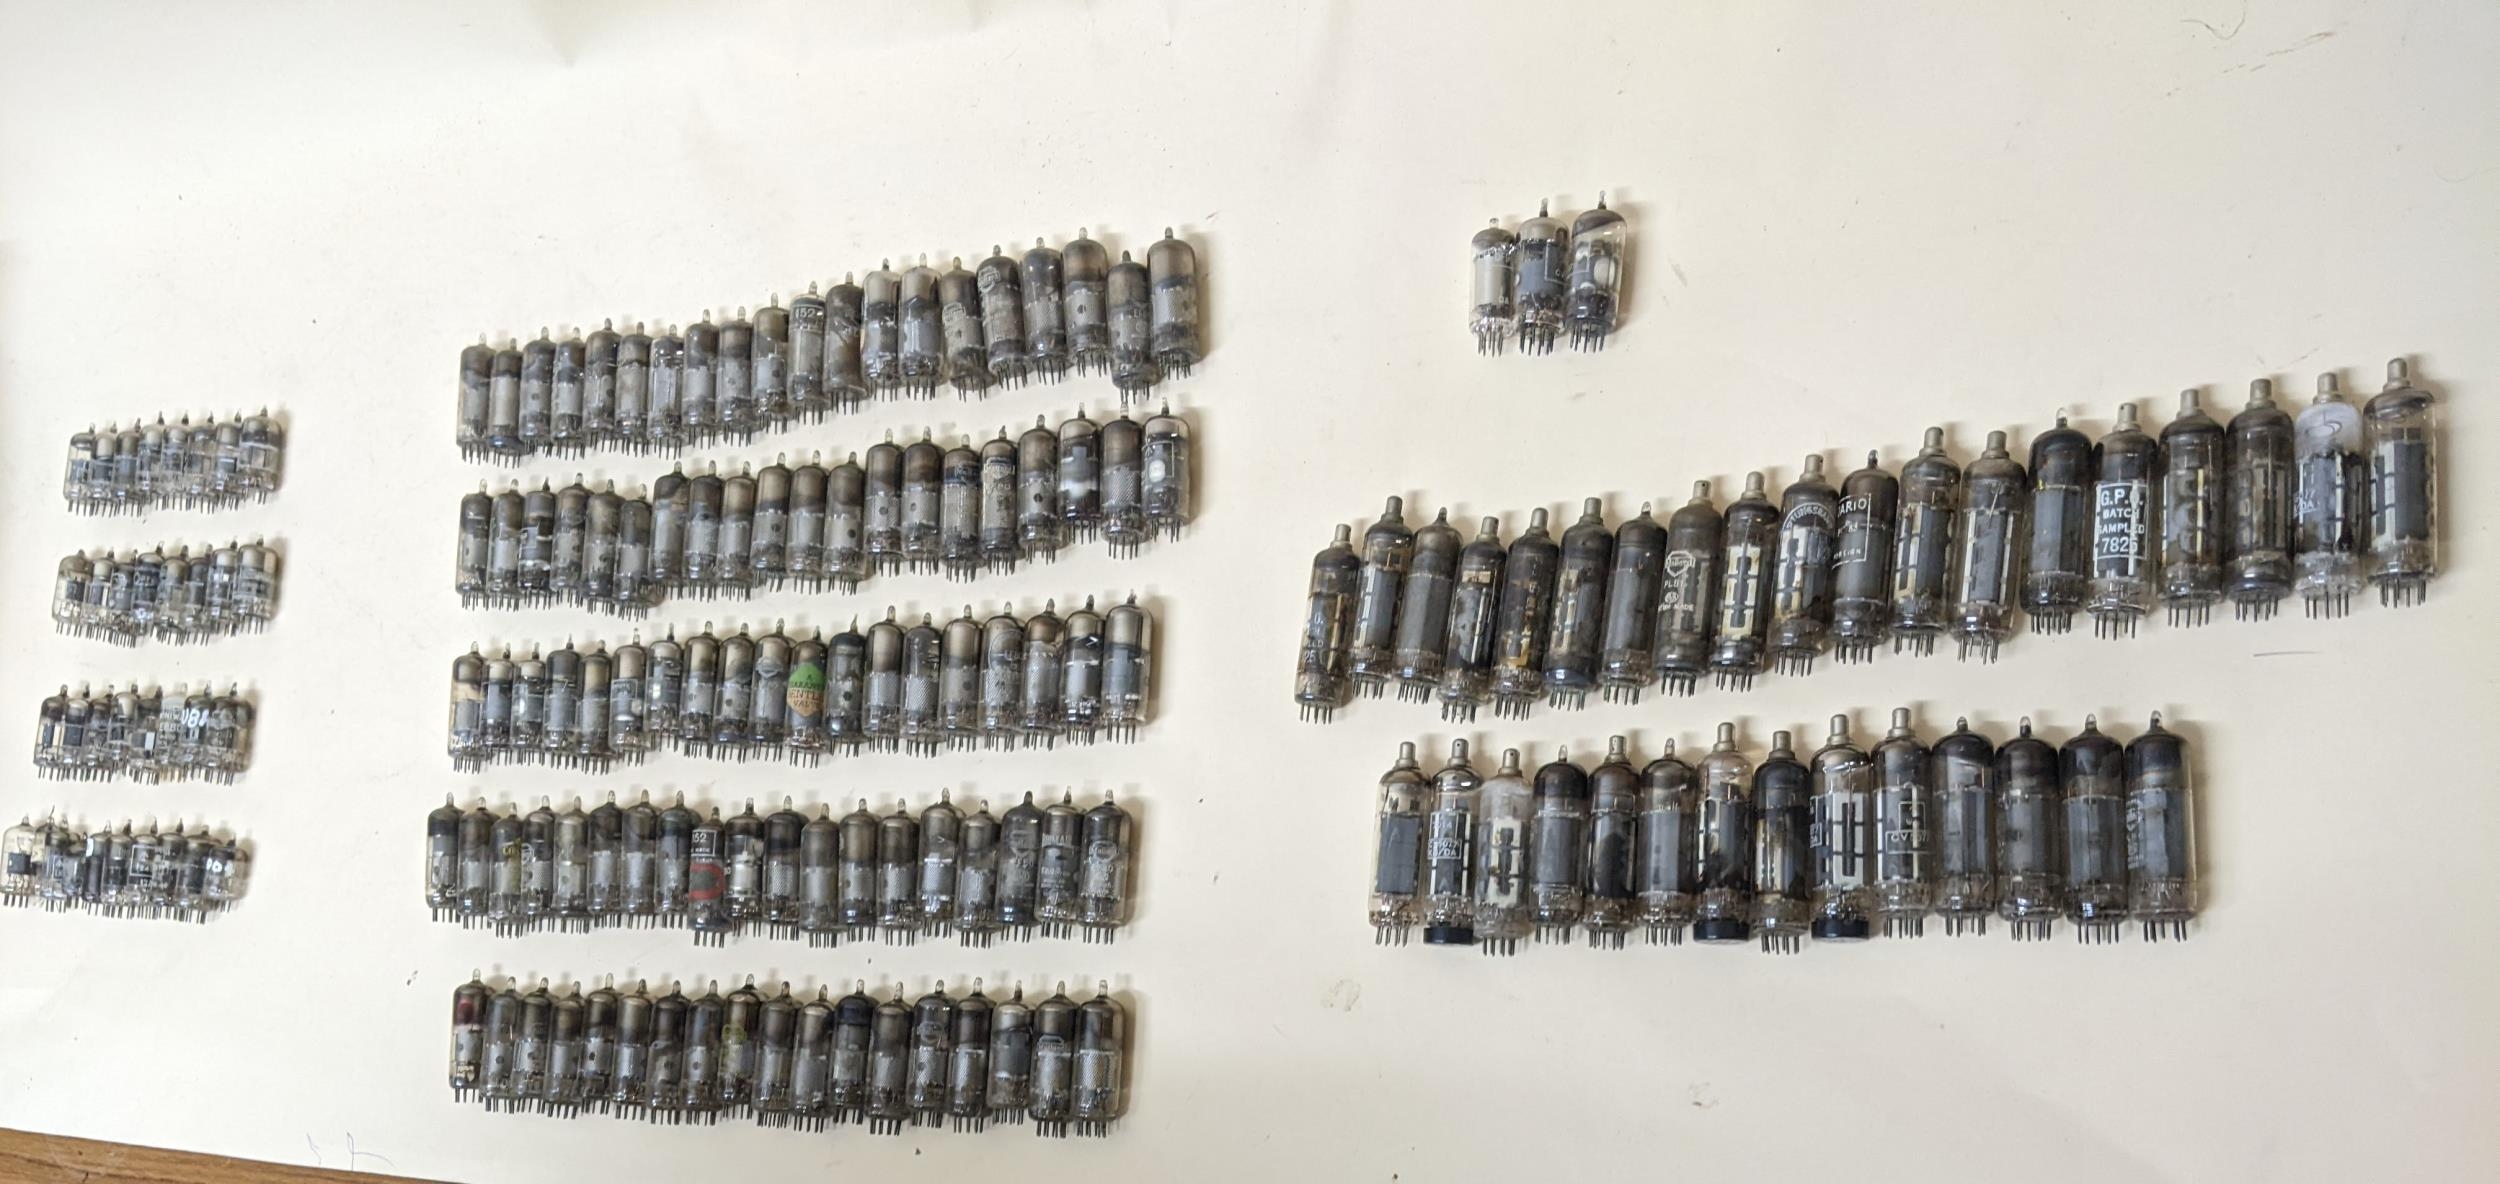 A quantity of radio valves to include Mullard EF80, Bentley valve, Mullard PL81, Dario PL83, GPO